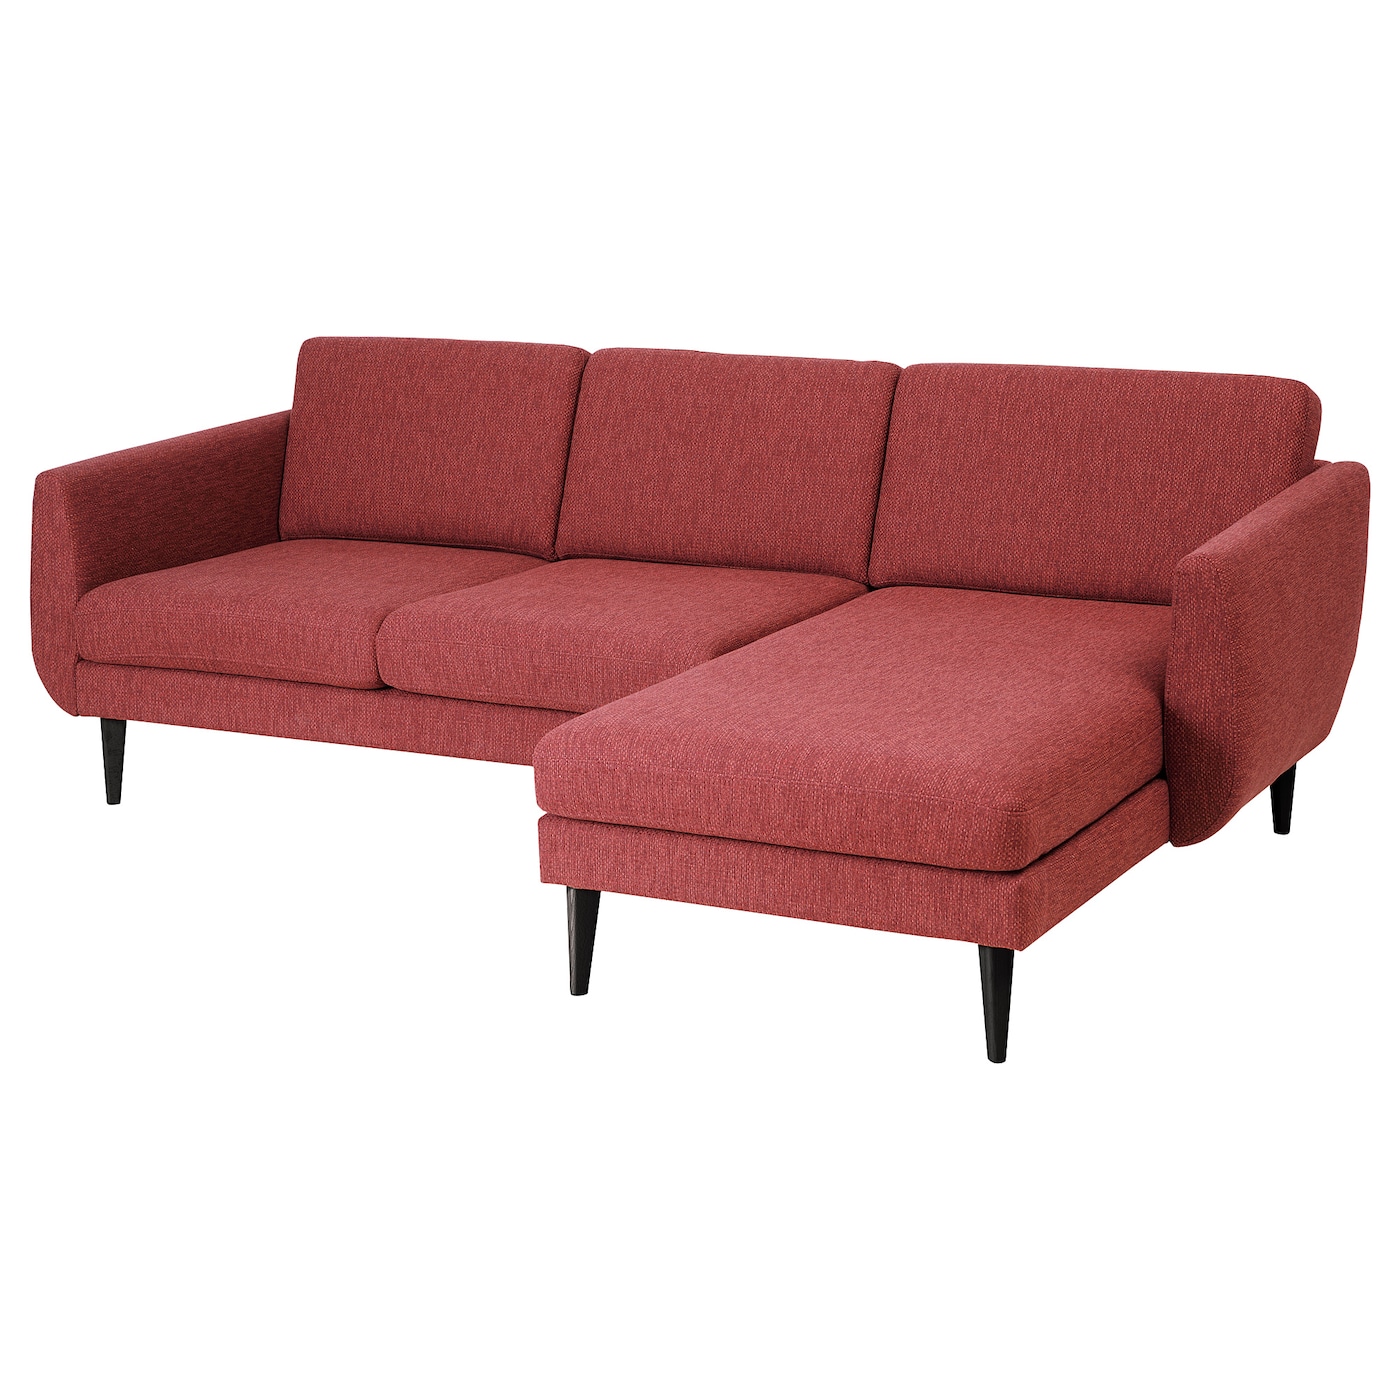 СМЕДСТОРП 3-местный диван + диван, Лейде красный/коричневый/черный SMEDSTORP IKEA